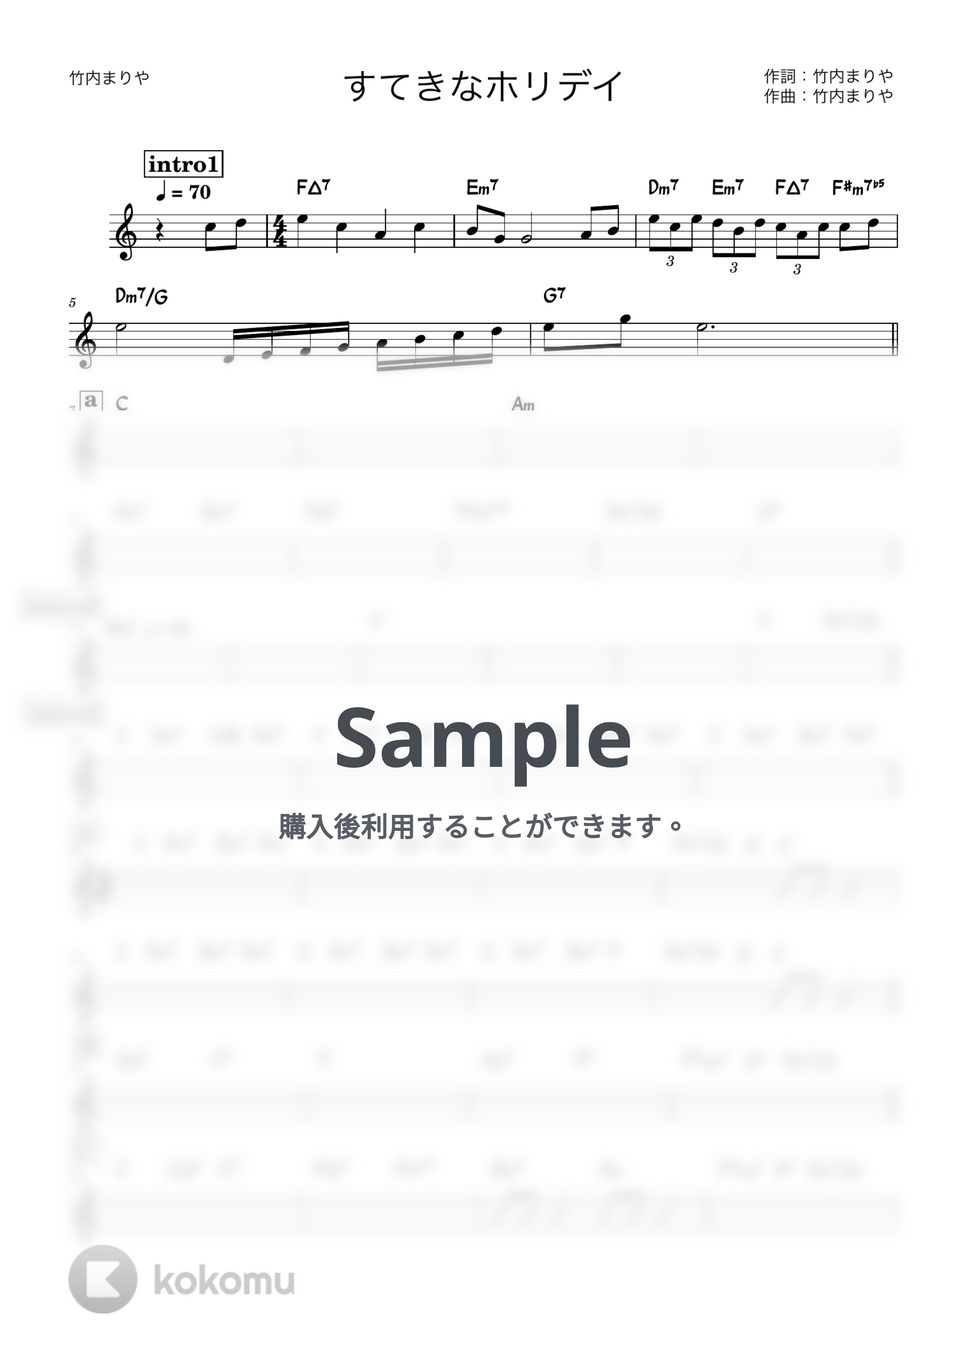 竹内まりや - すてきなホリデイ (バンド用コード譜) by 箱譜屋